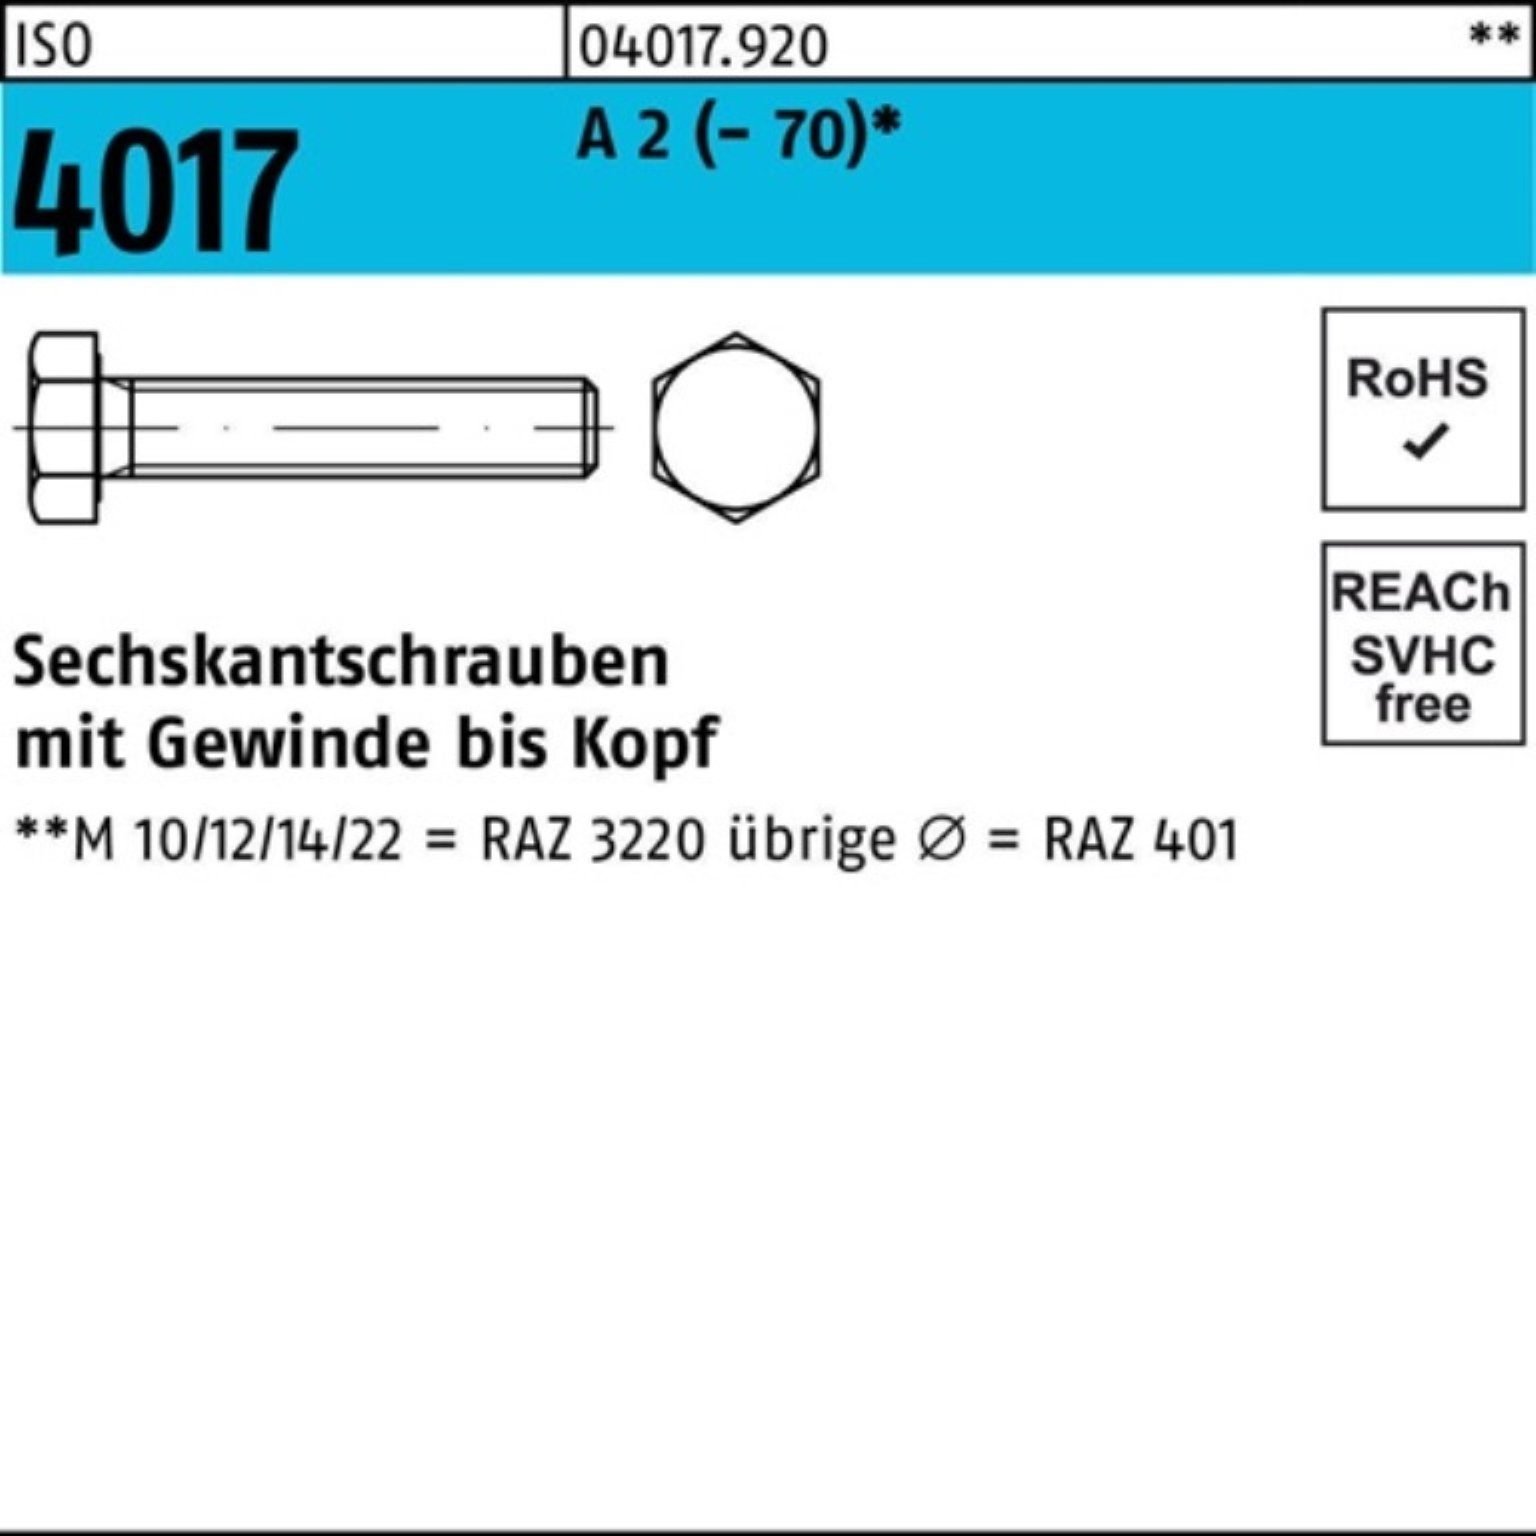 Bufab Sechskantschraube 100er Pack Sechskantschraube ISO 4017 VG M8x 70 A 2 (70) 50 Stück I